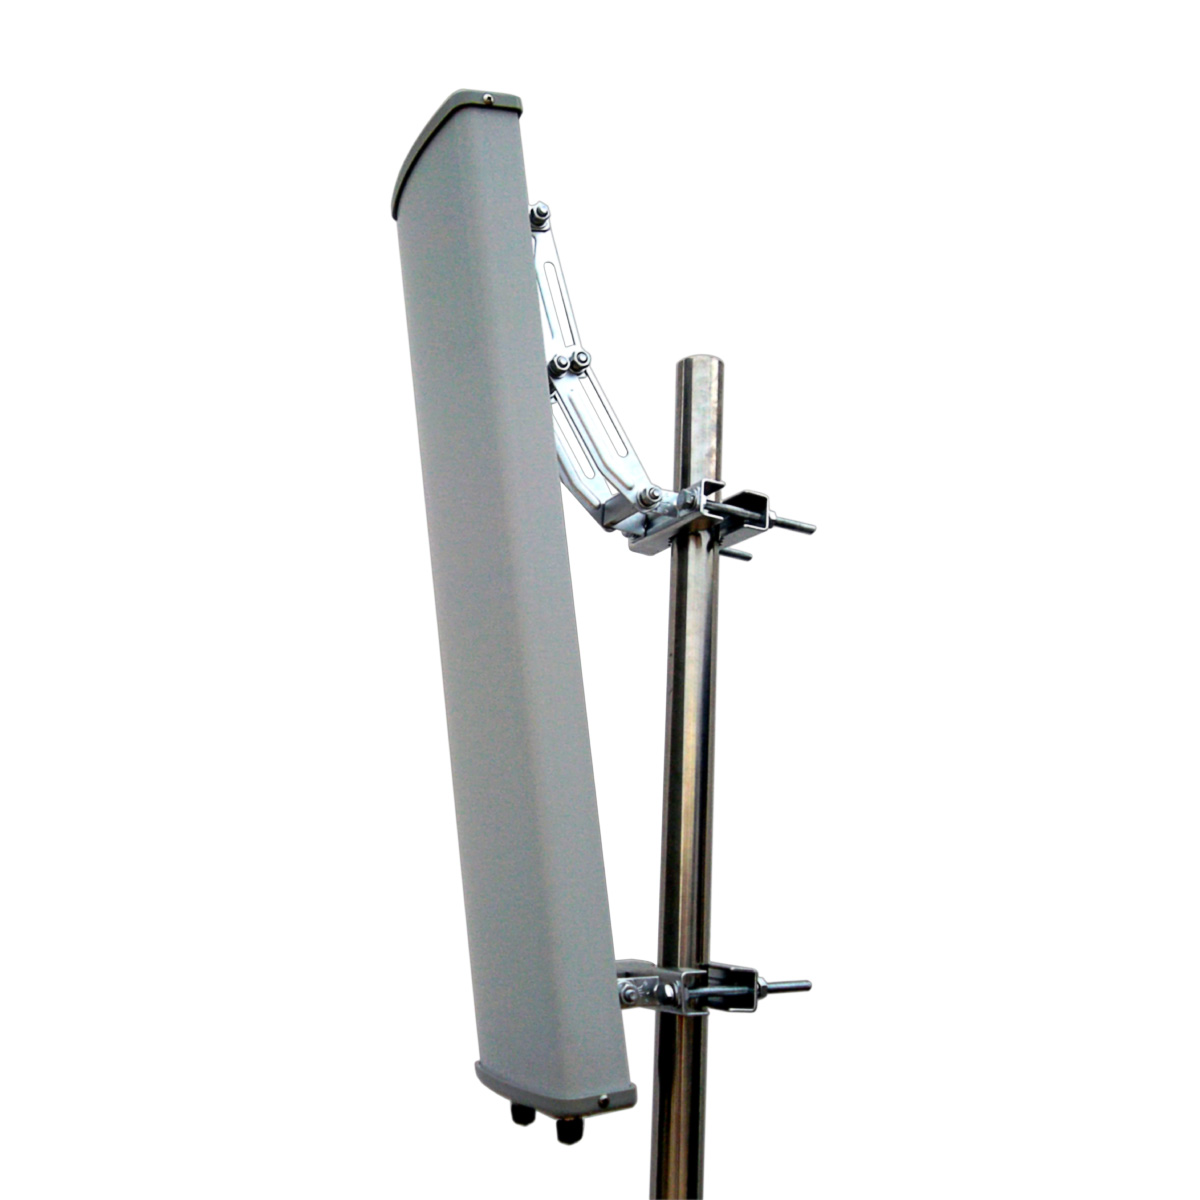 Novos produtos RF698-960/1710-2700MHz Antena de painel com alto ganho para DAS IBS